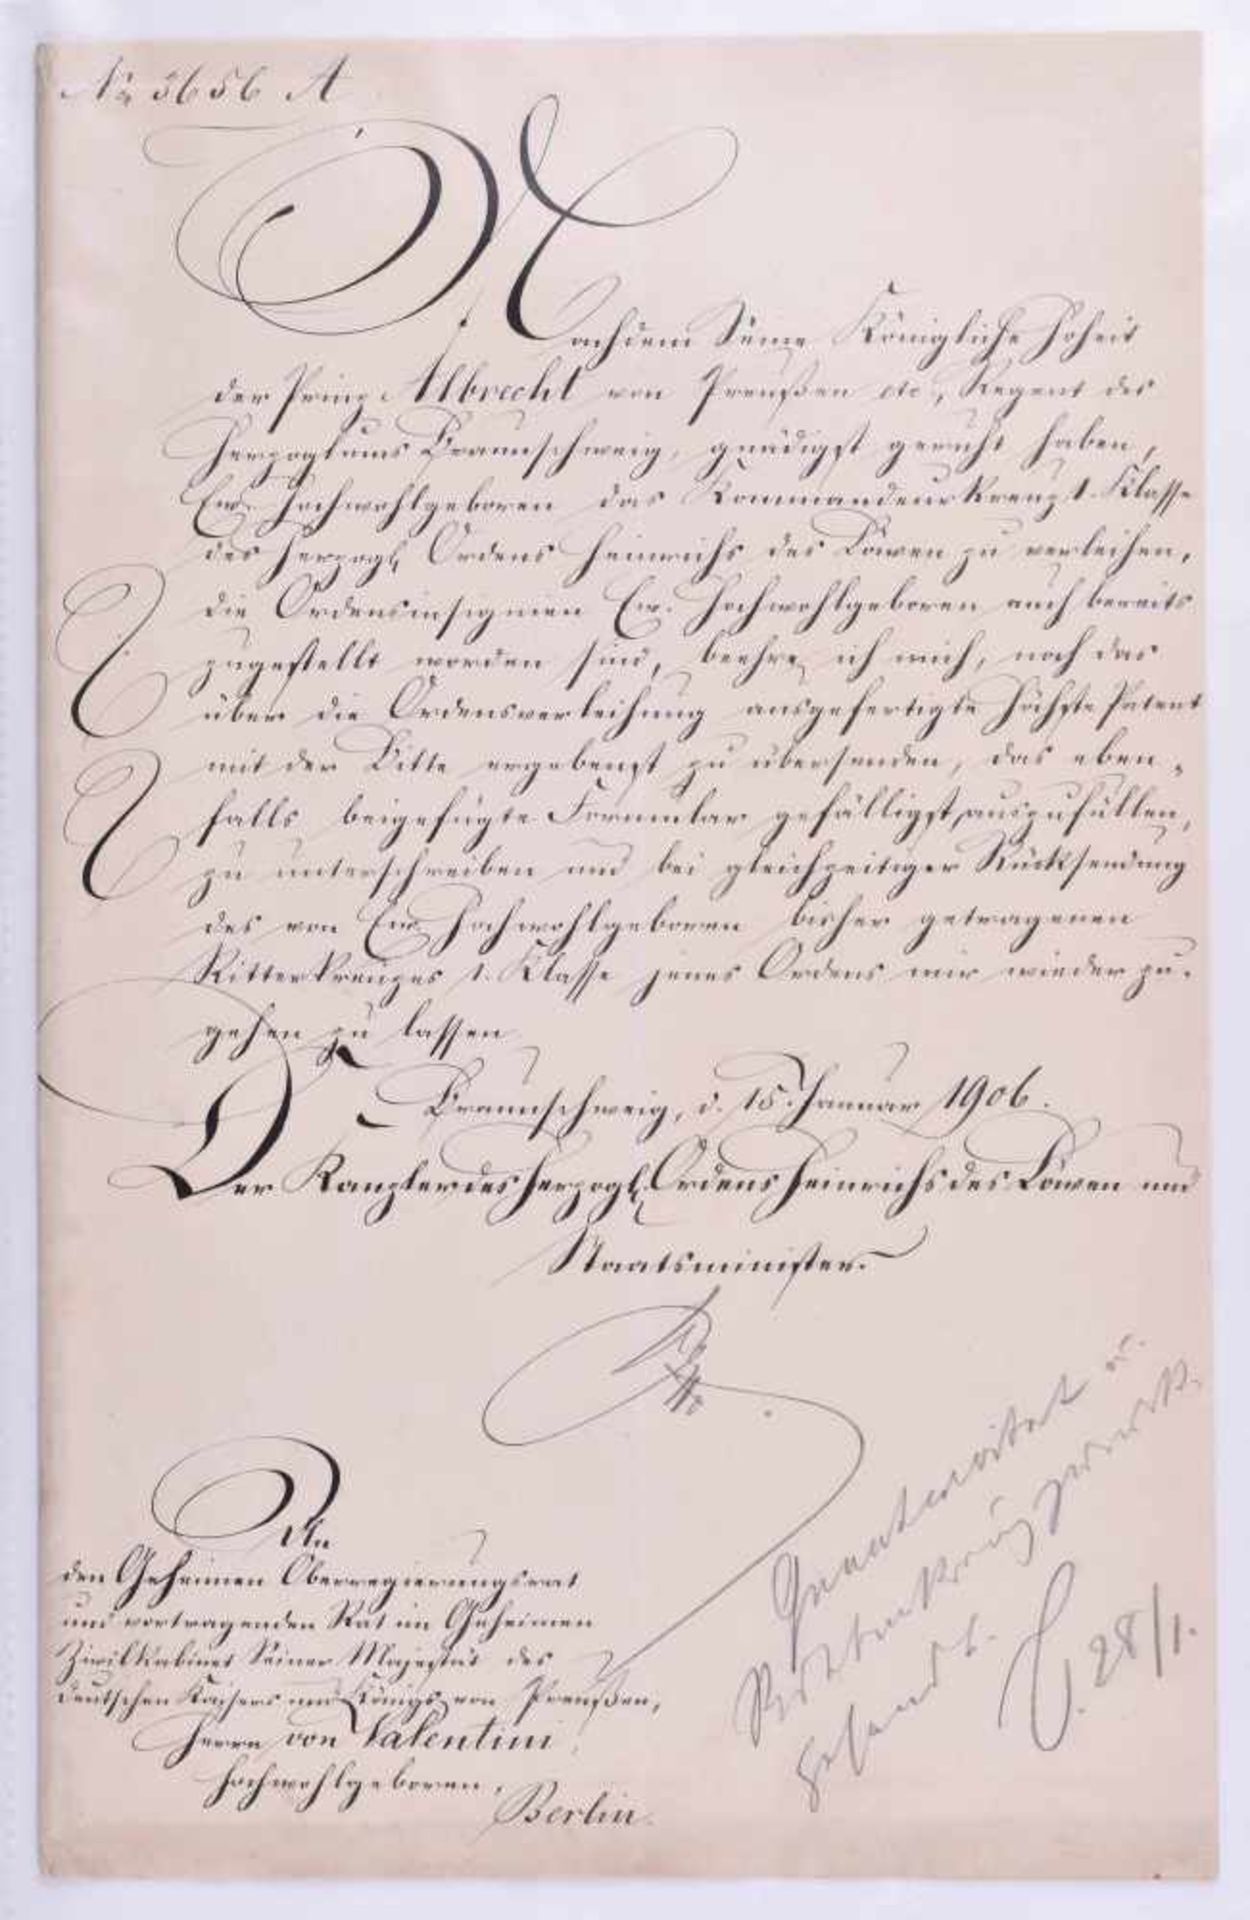 Braunschweig-Albert von Otto (1836-1922), AutographSchreiben der Kanzlei des Herzoglichen Ordens